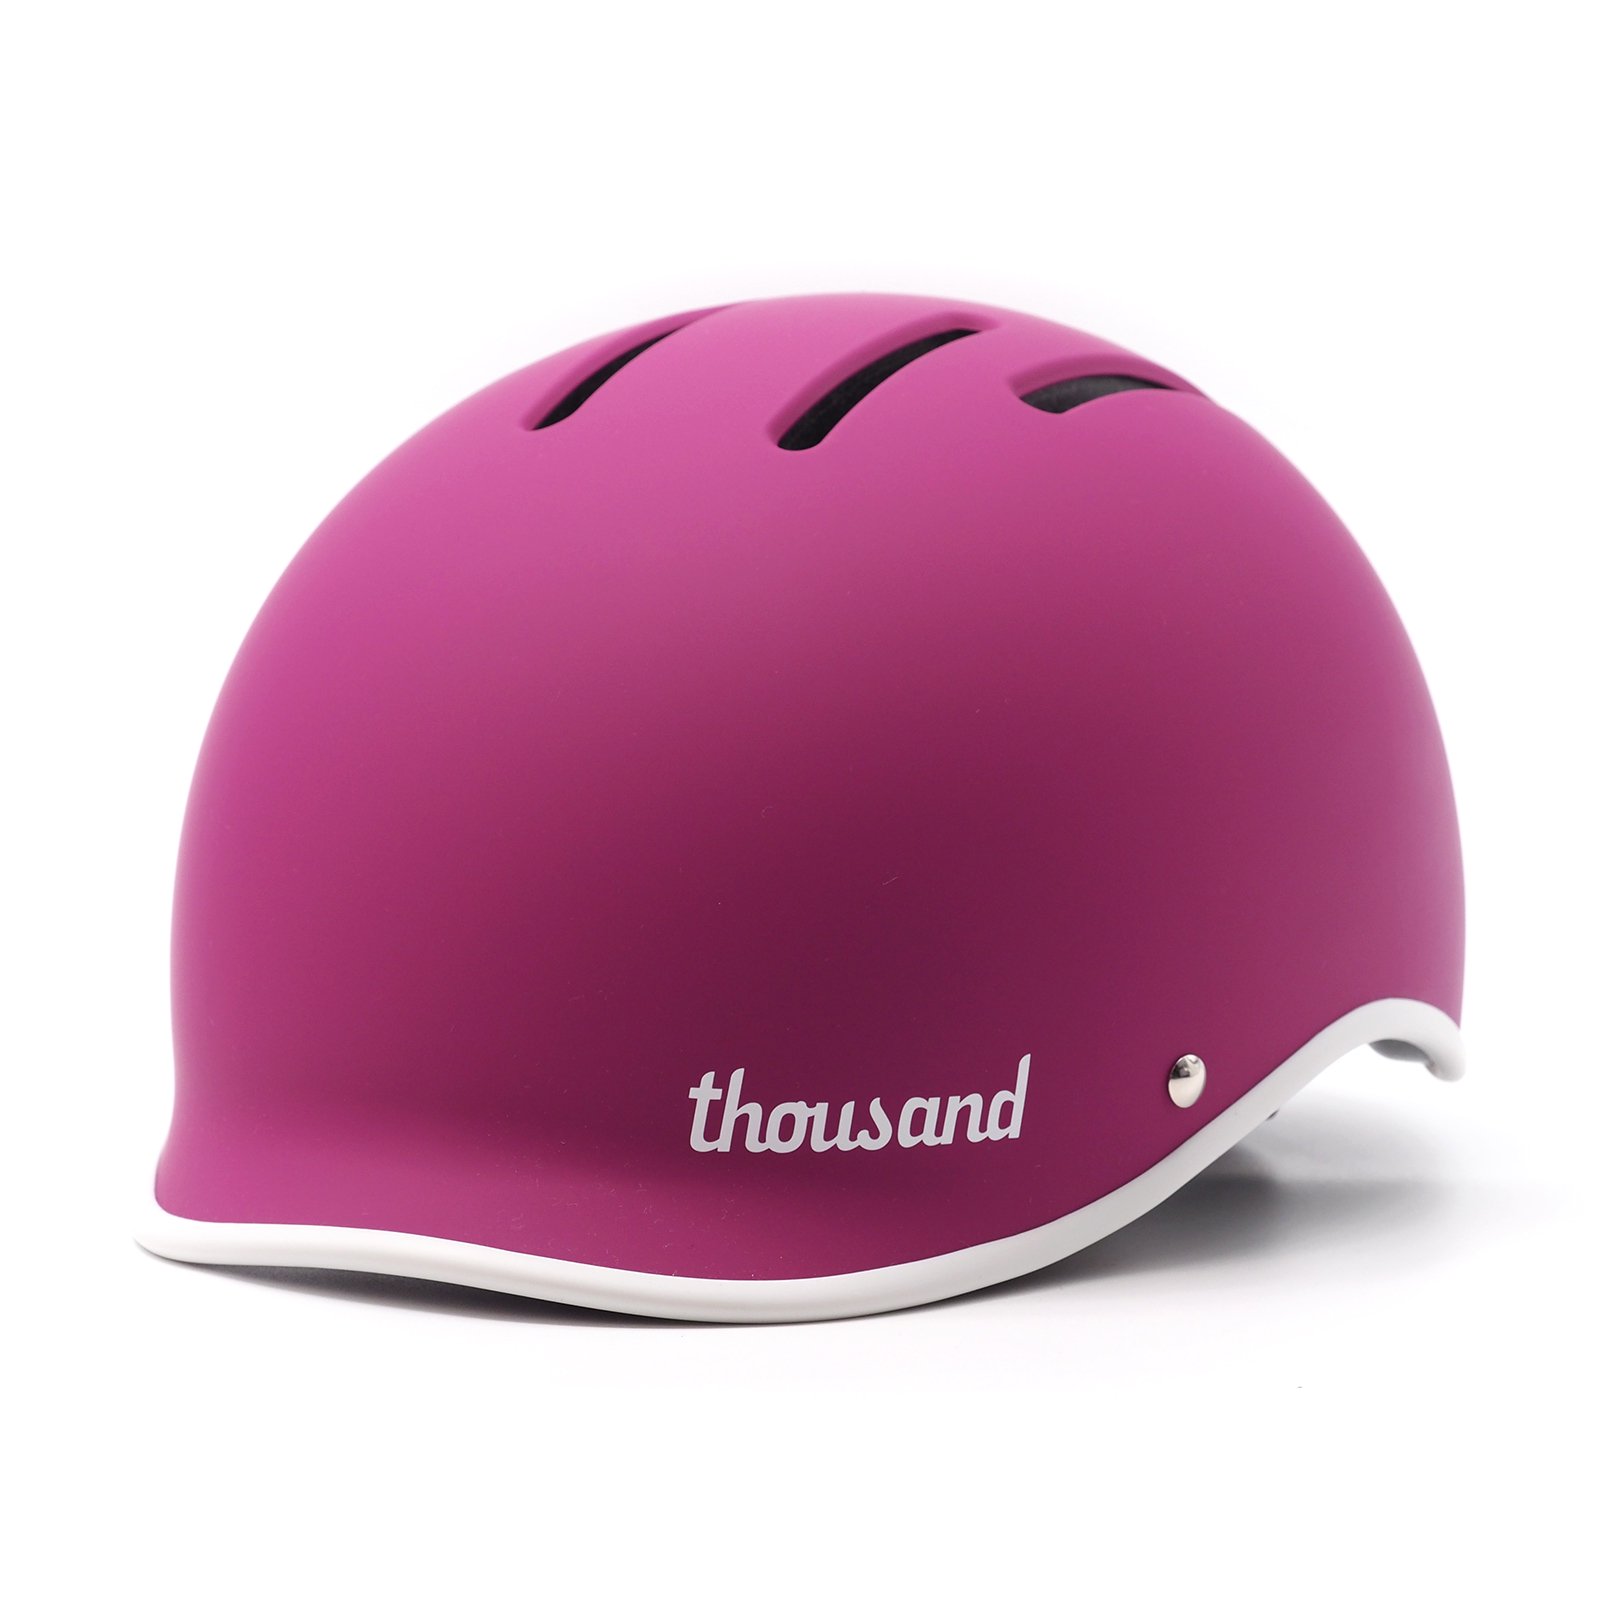 Thousand Helmet サウザンド・ヘルメット M サイズ 自転車用 